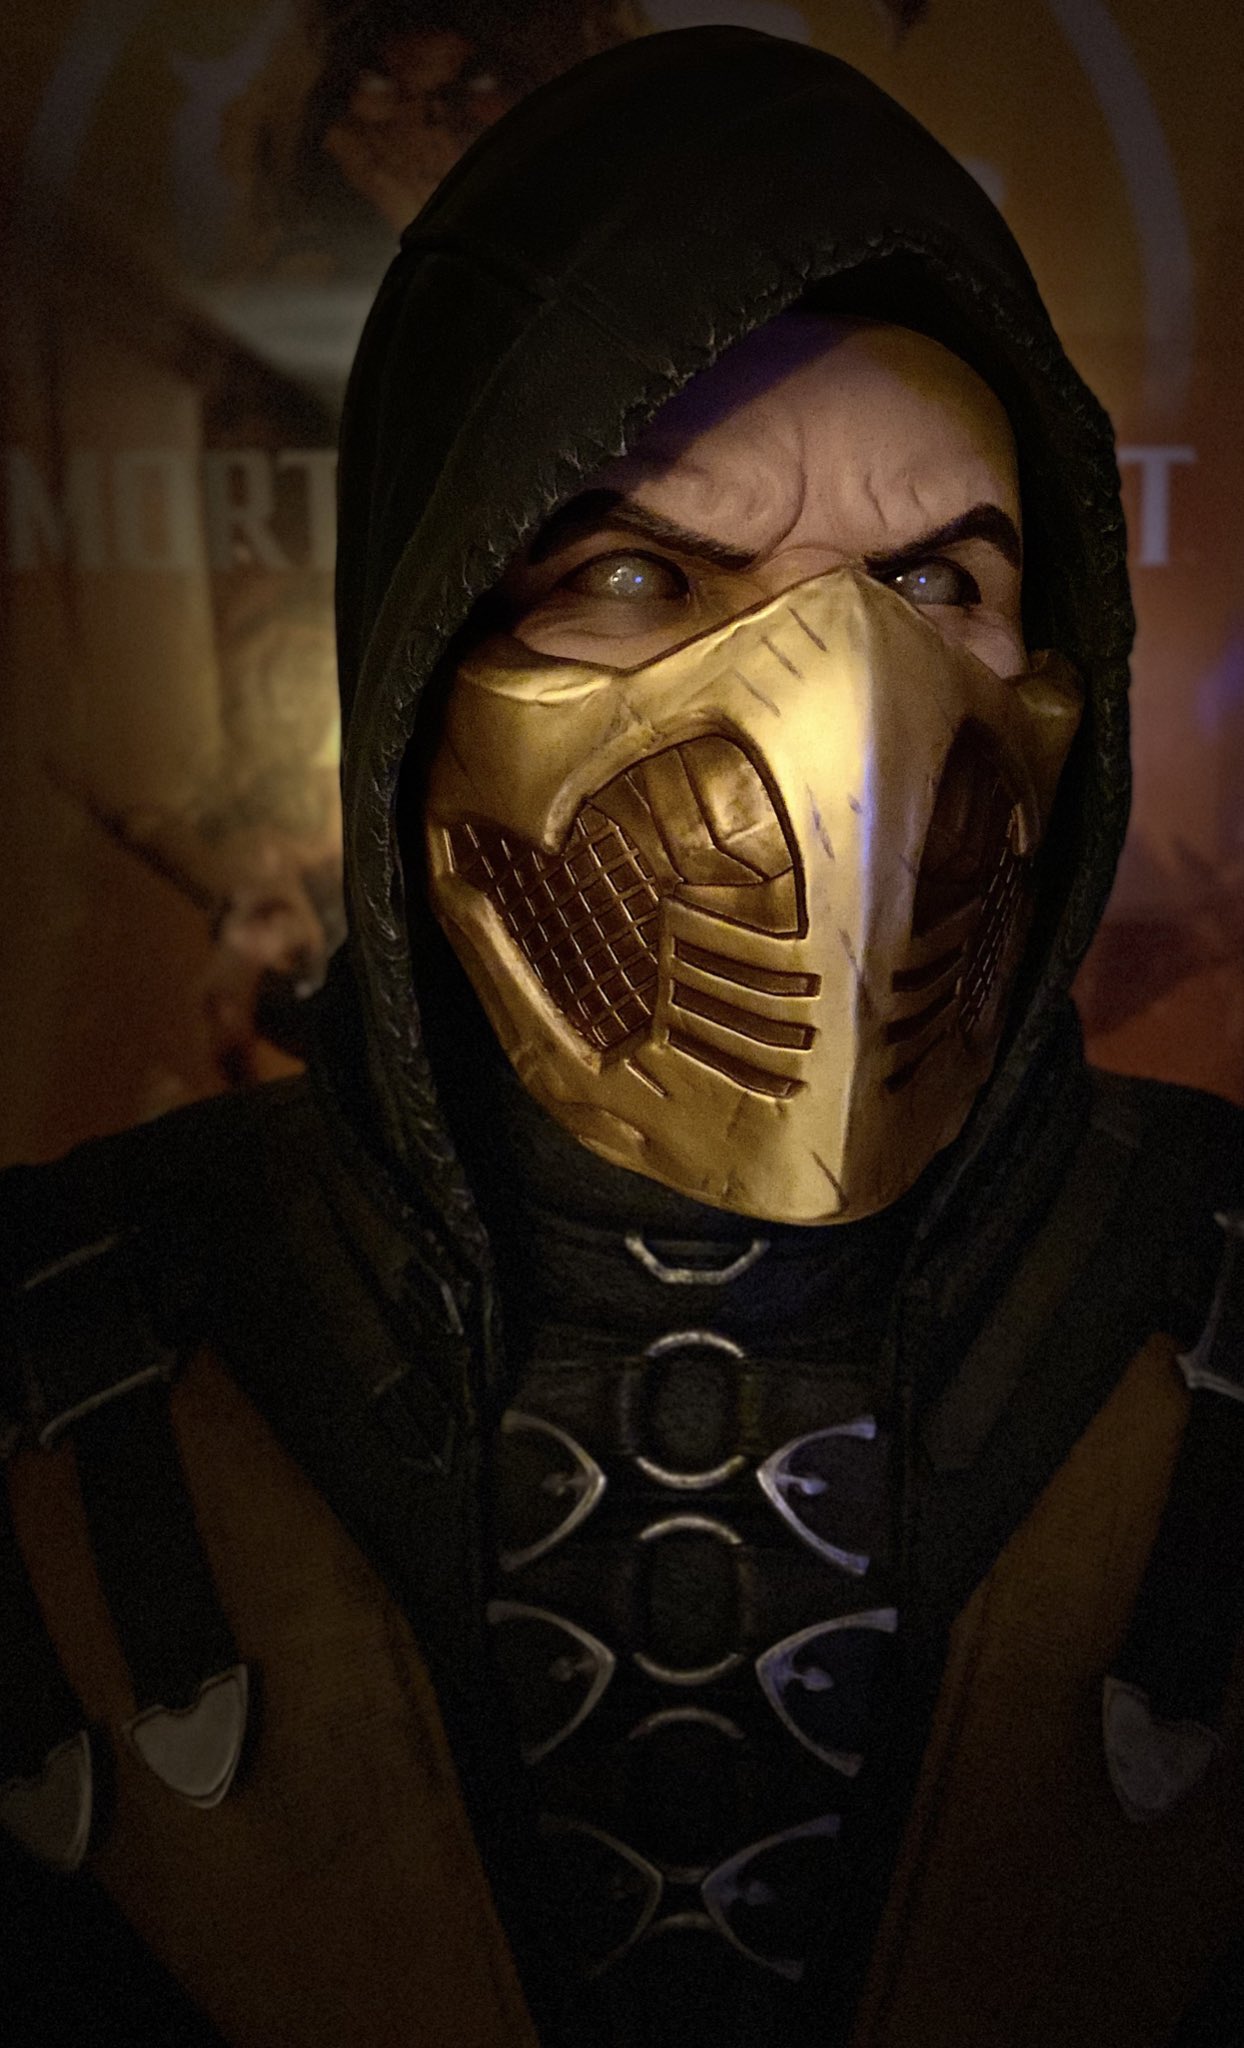 Mortal Kombat 12: Tweet de Ed Boon levanta hipótese de um anúncio em breve  - Combo Infinito